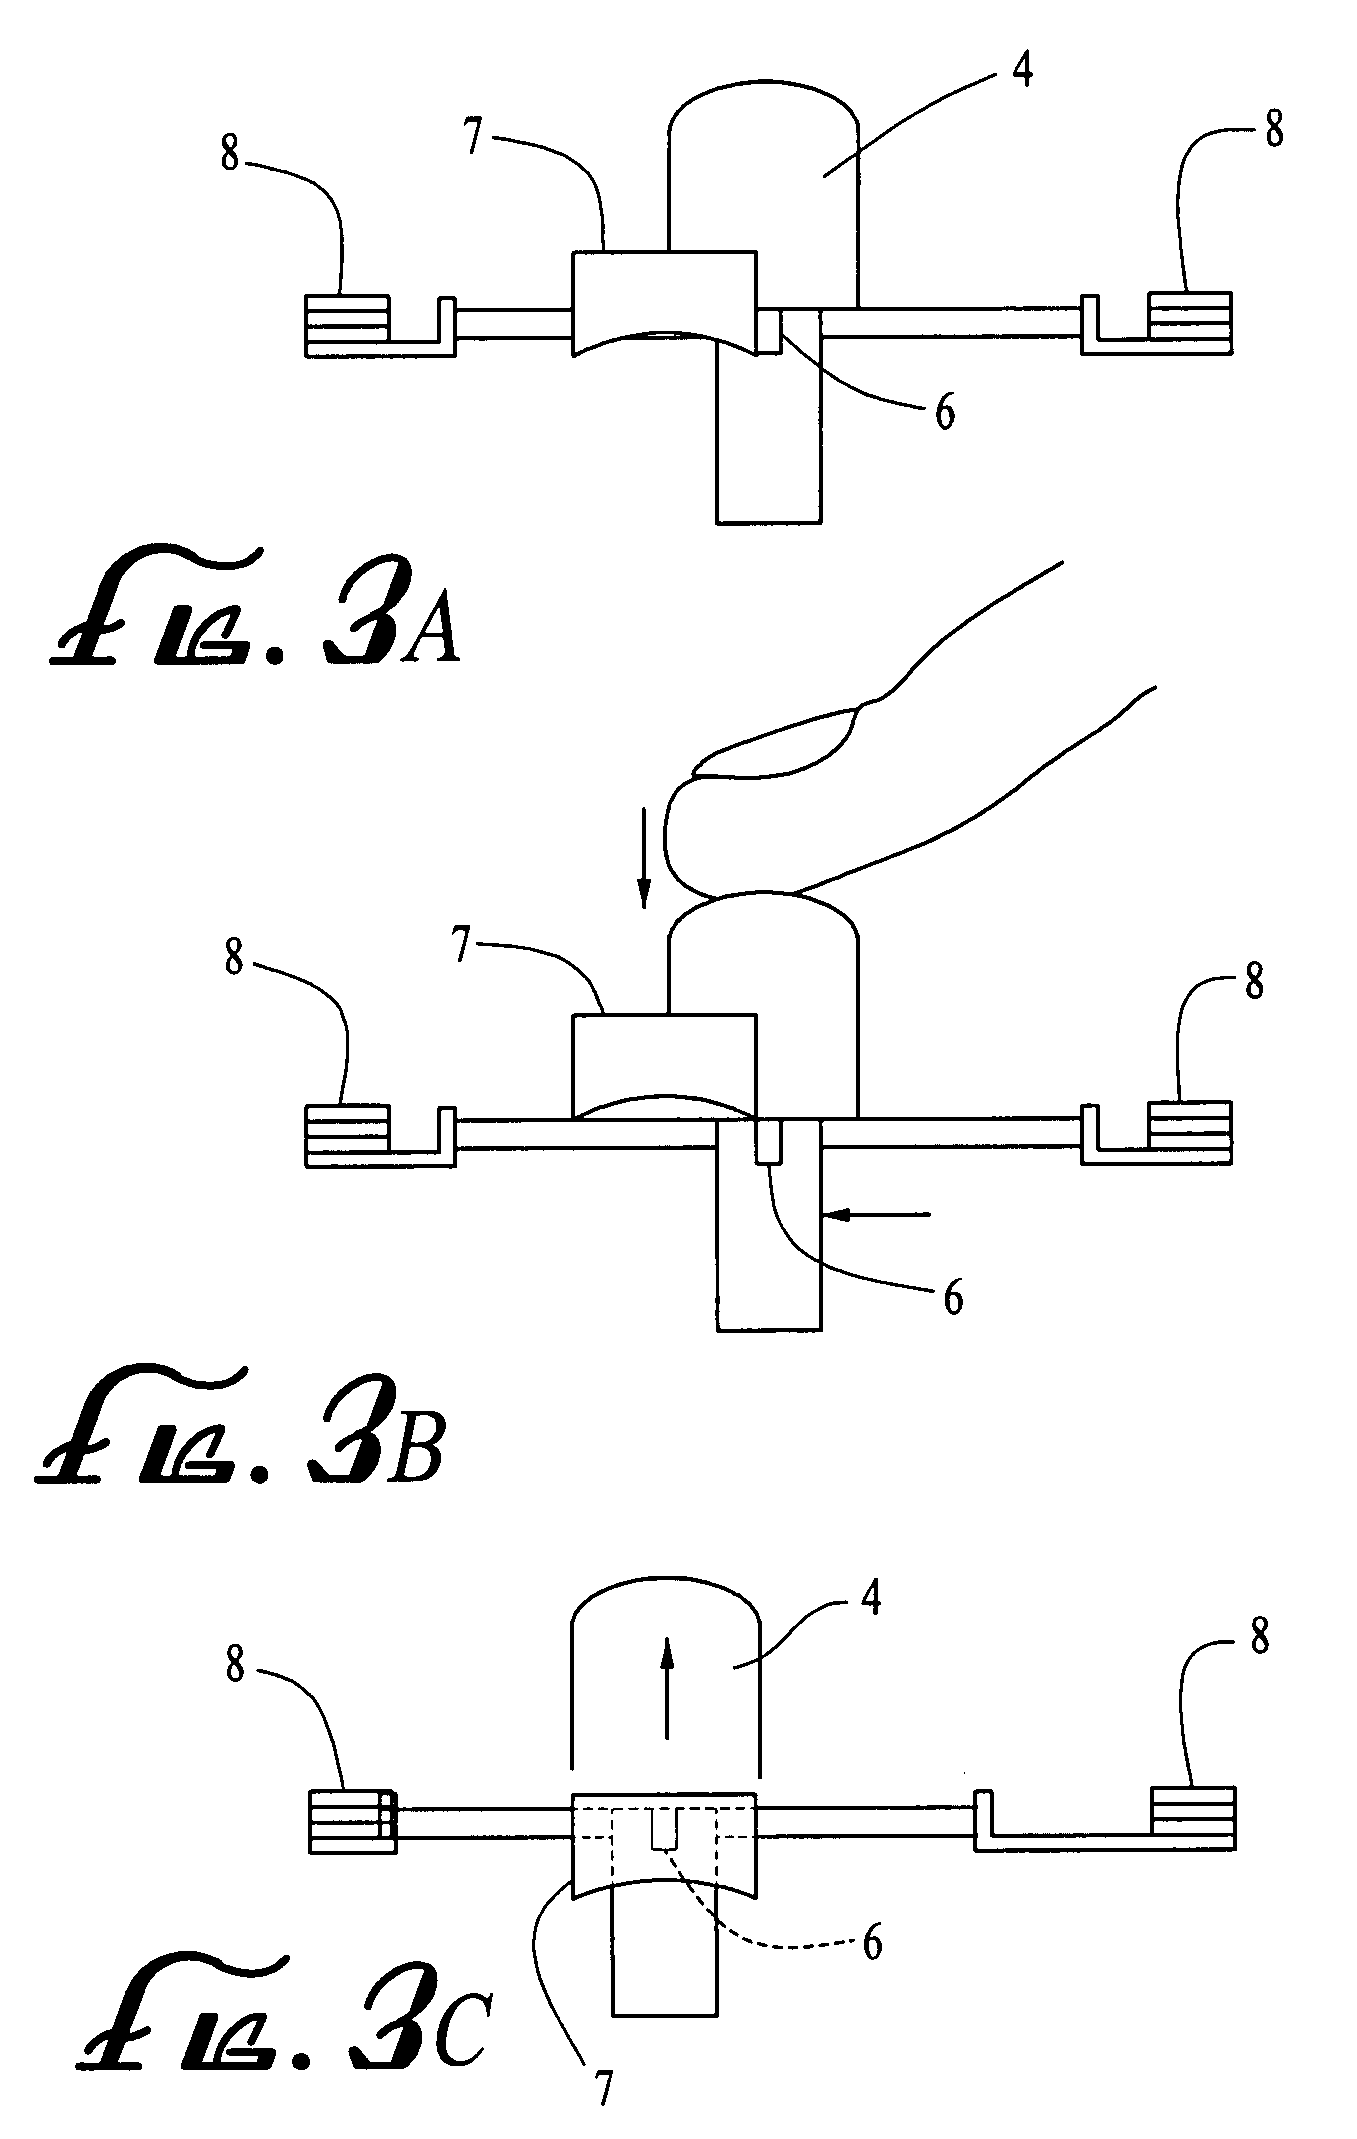 Shutoff mechanism for shredder